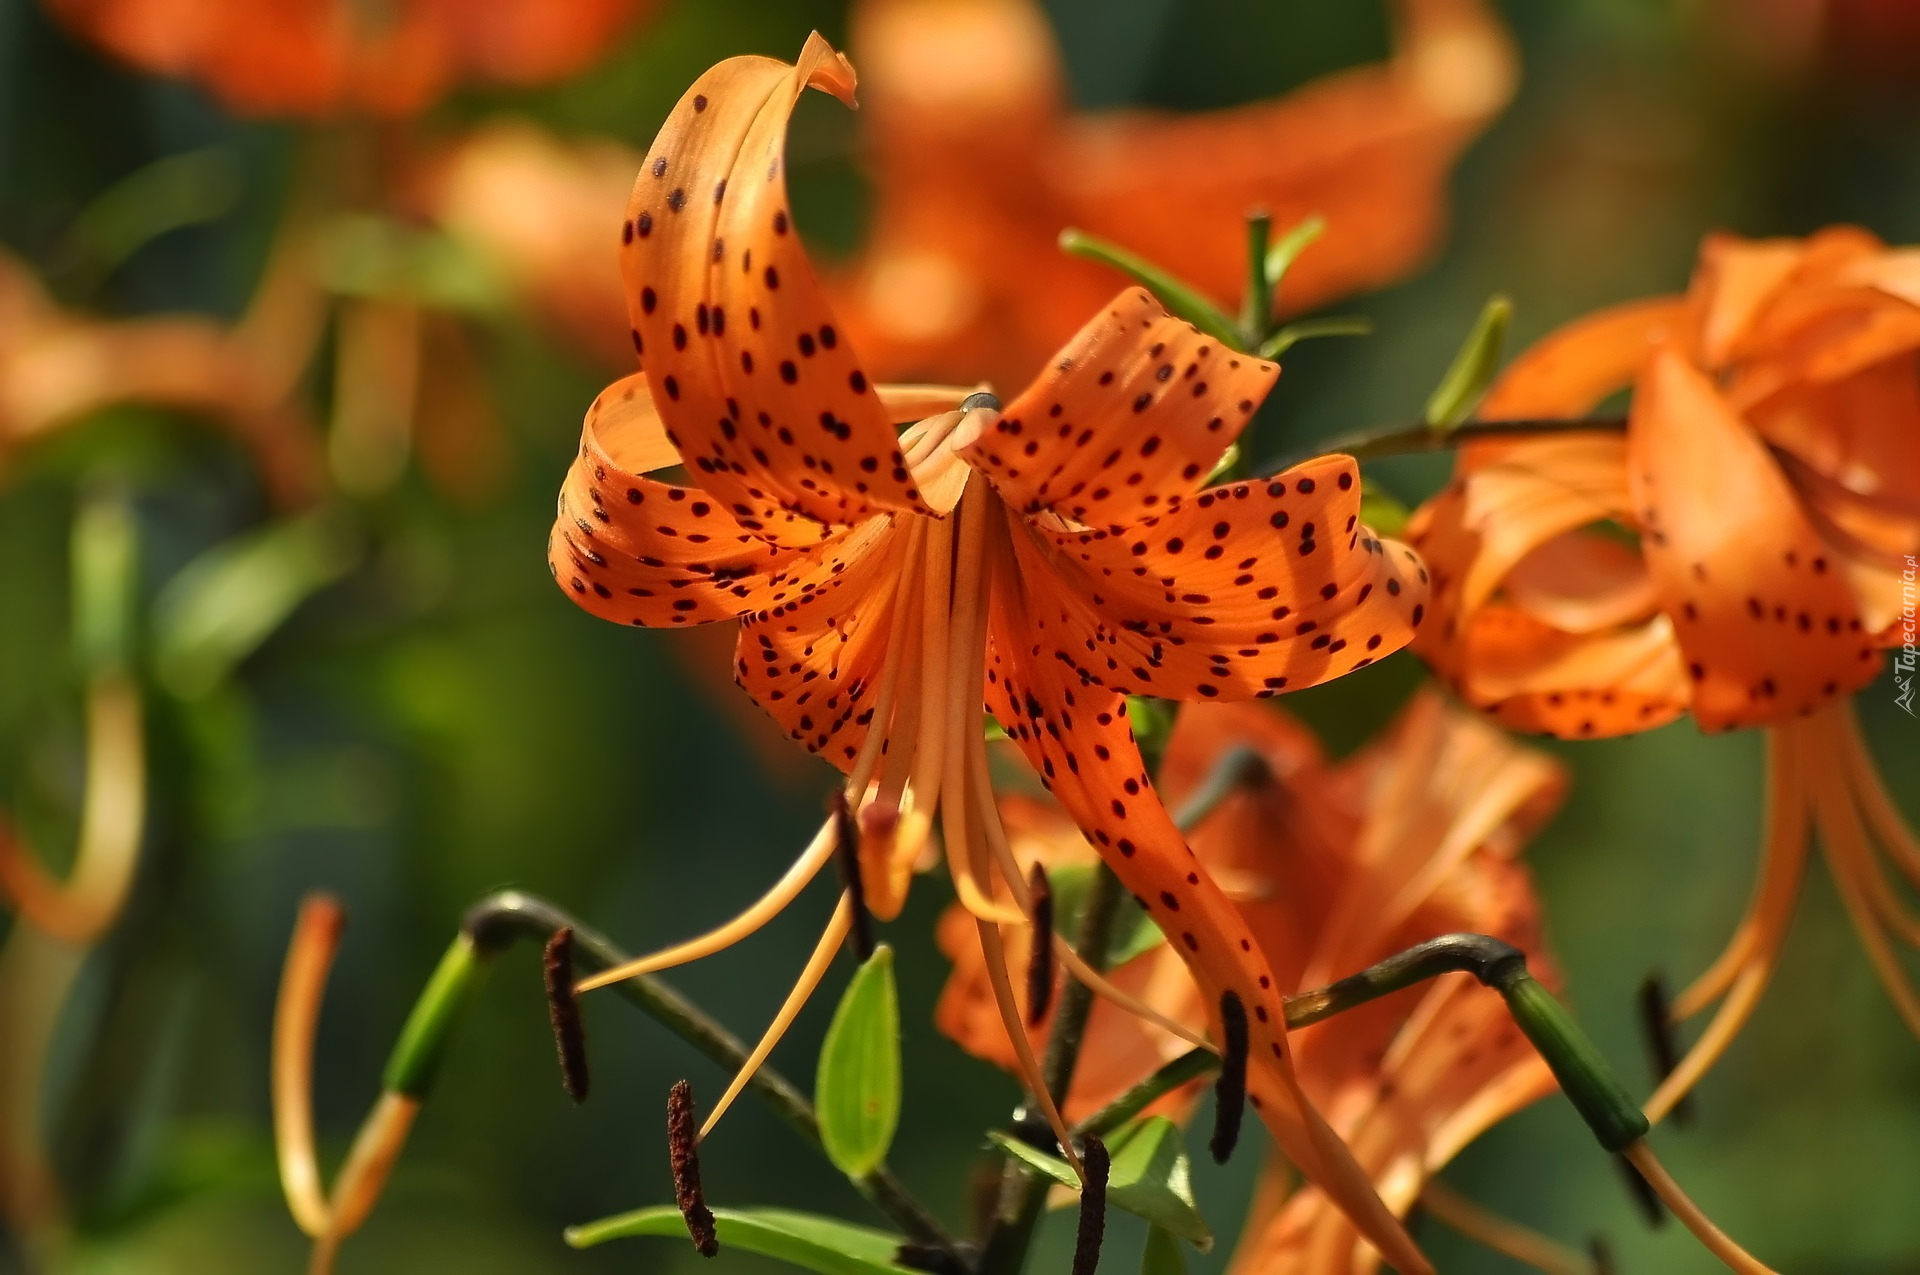 Lilia tygrysia, Pomarańczowe, Kwiaty